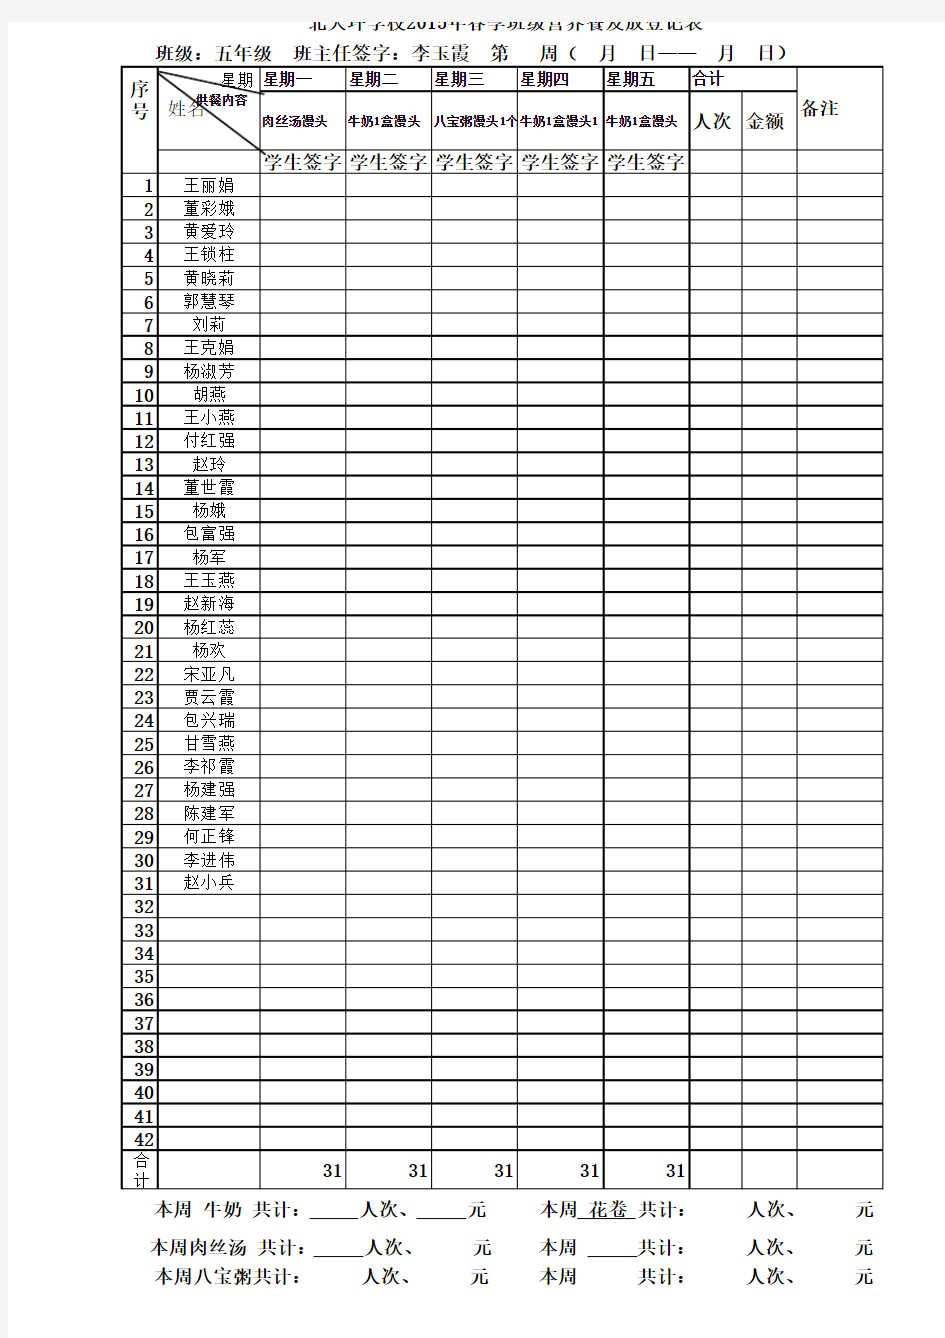 北大坪学校五年级2015年春季班级营养餐发放登记表